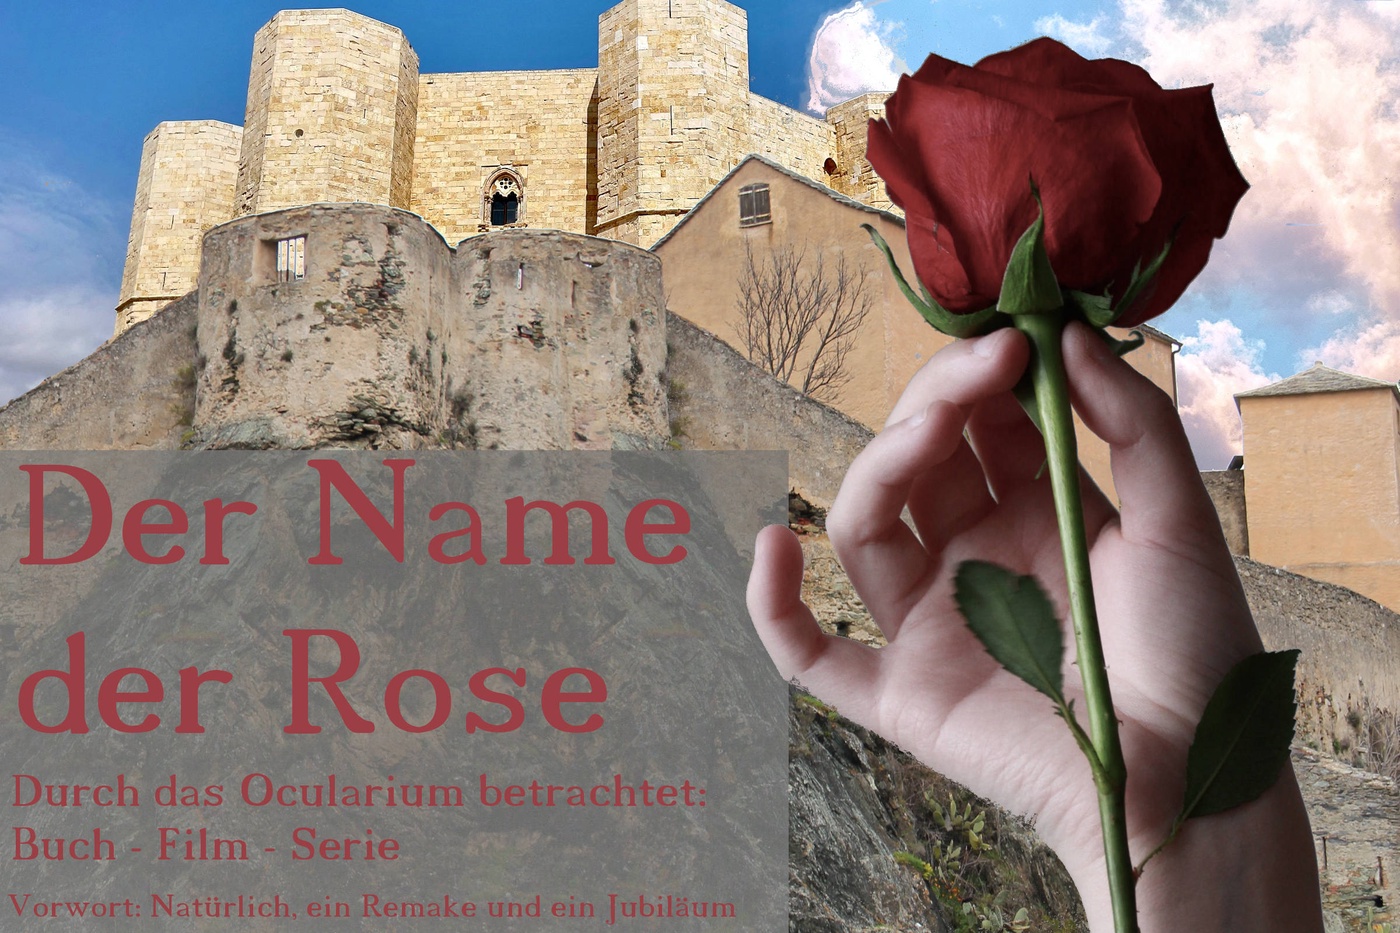 Der Name der Rose - Durch das Ocularium betrachtet: Buch - Film - Serie (1)